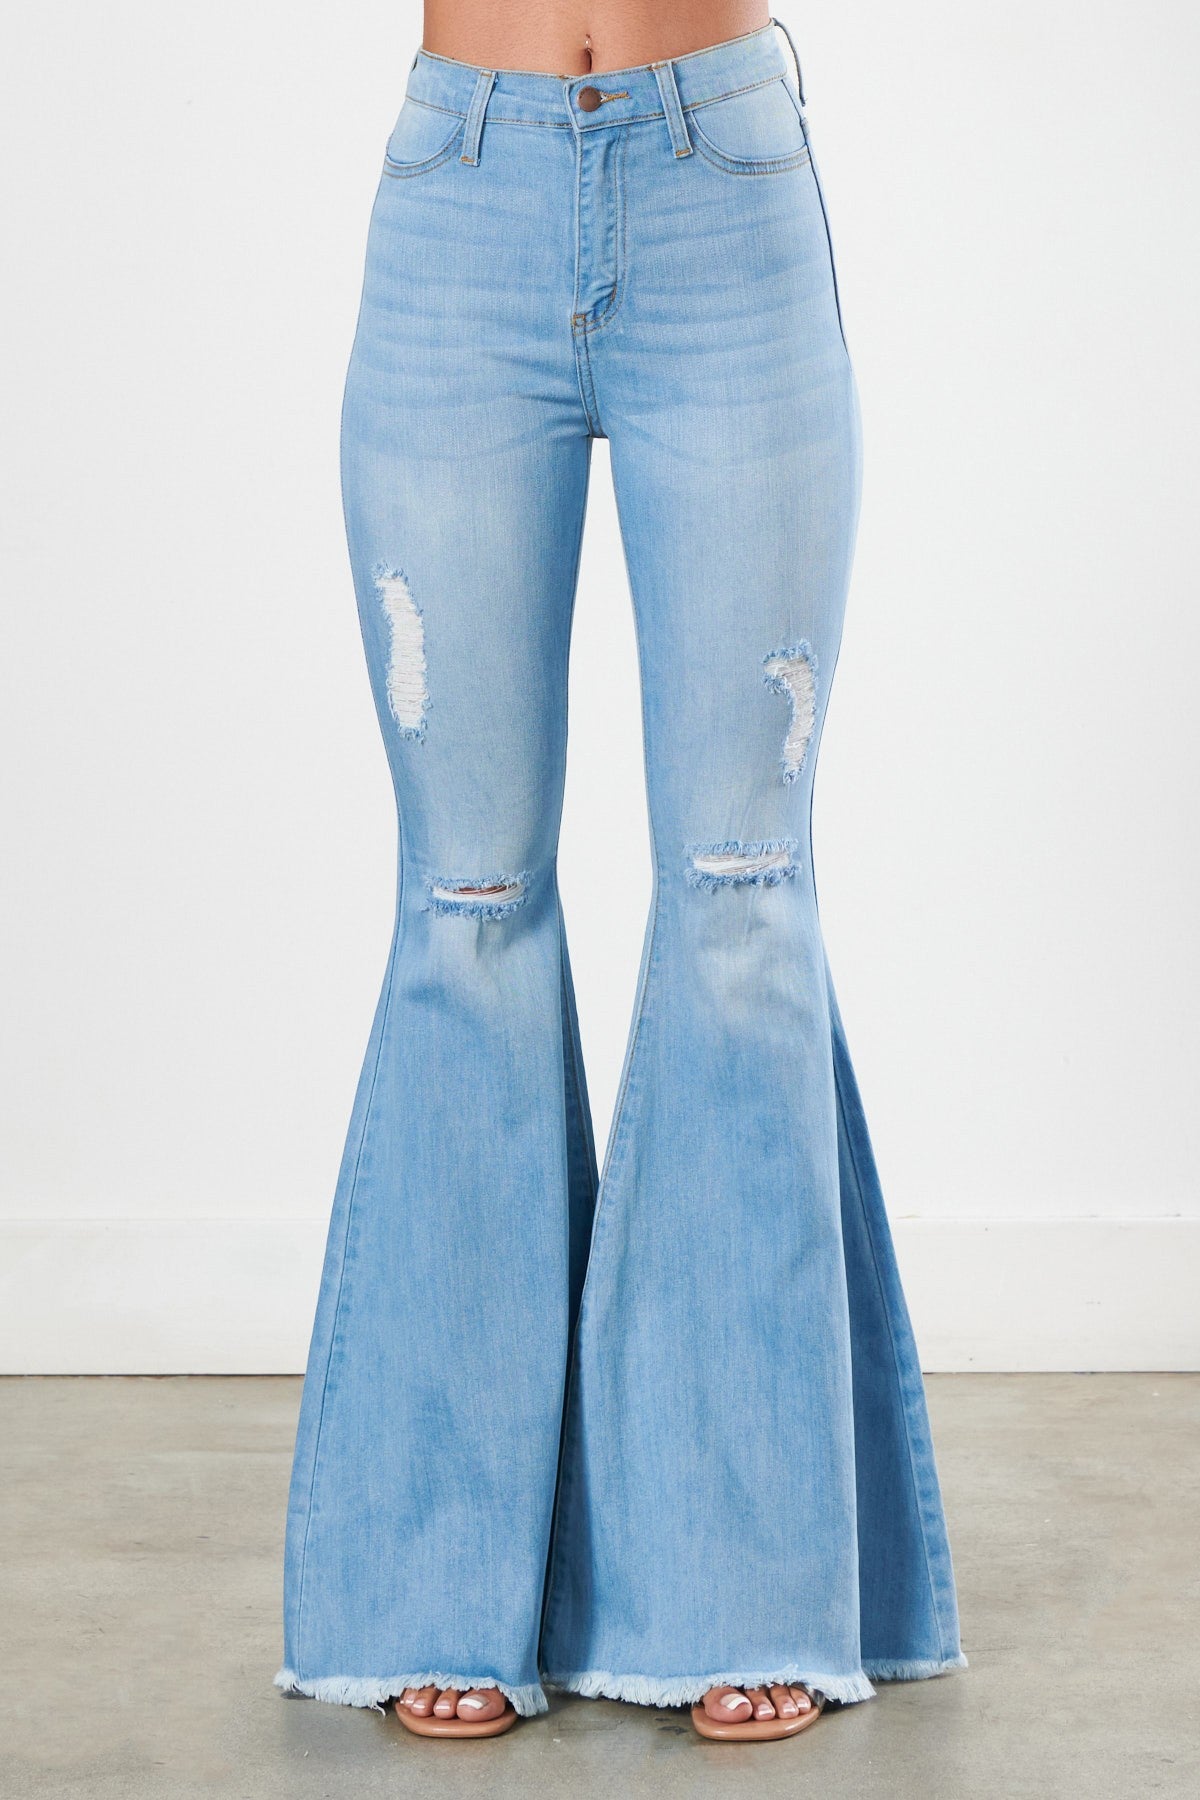 NWT Vibrant women high waist distress light blue flares jeans denim ...